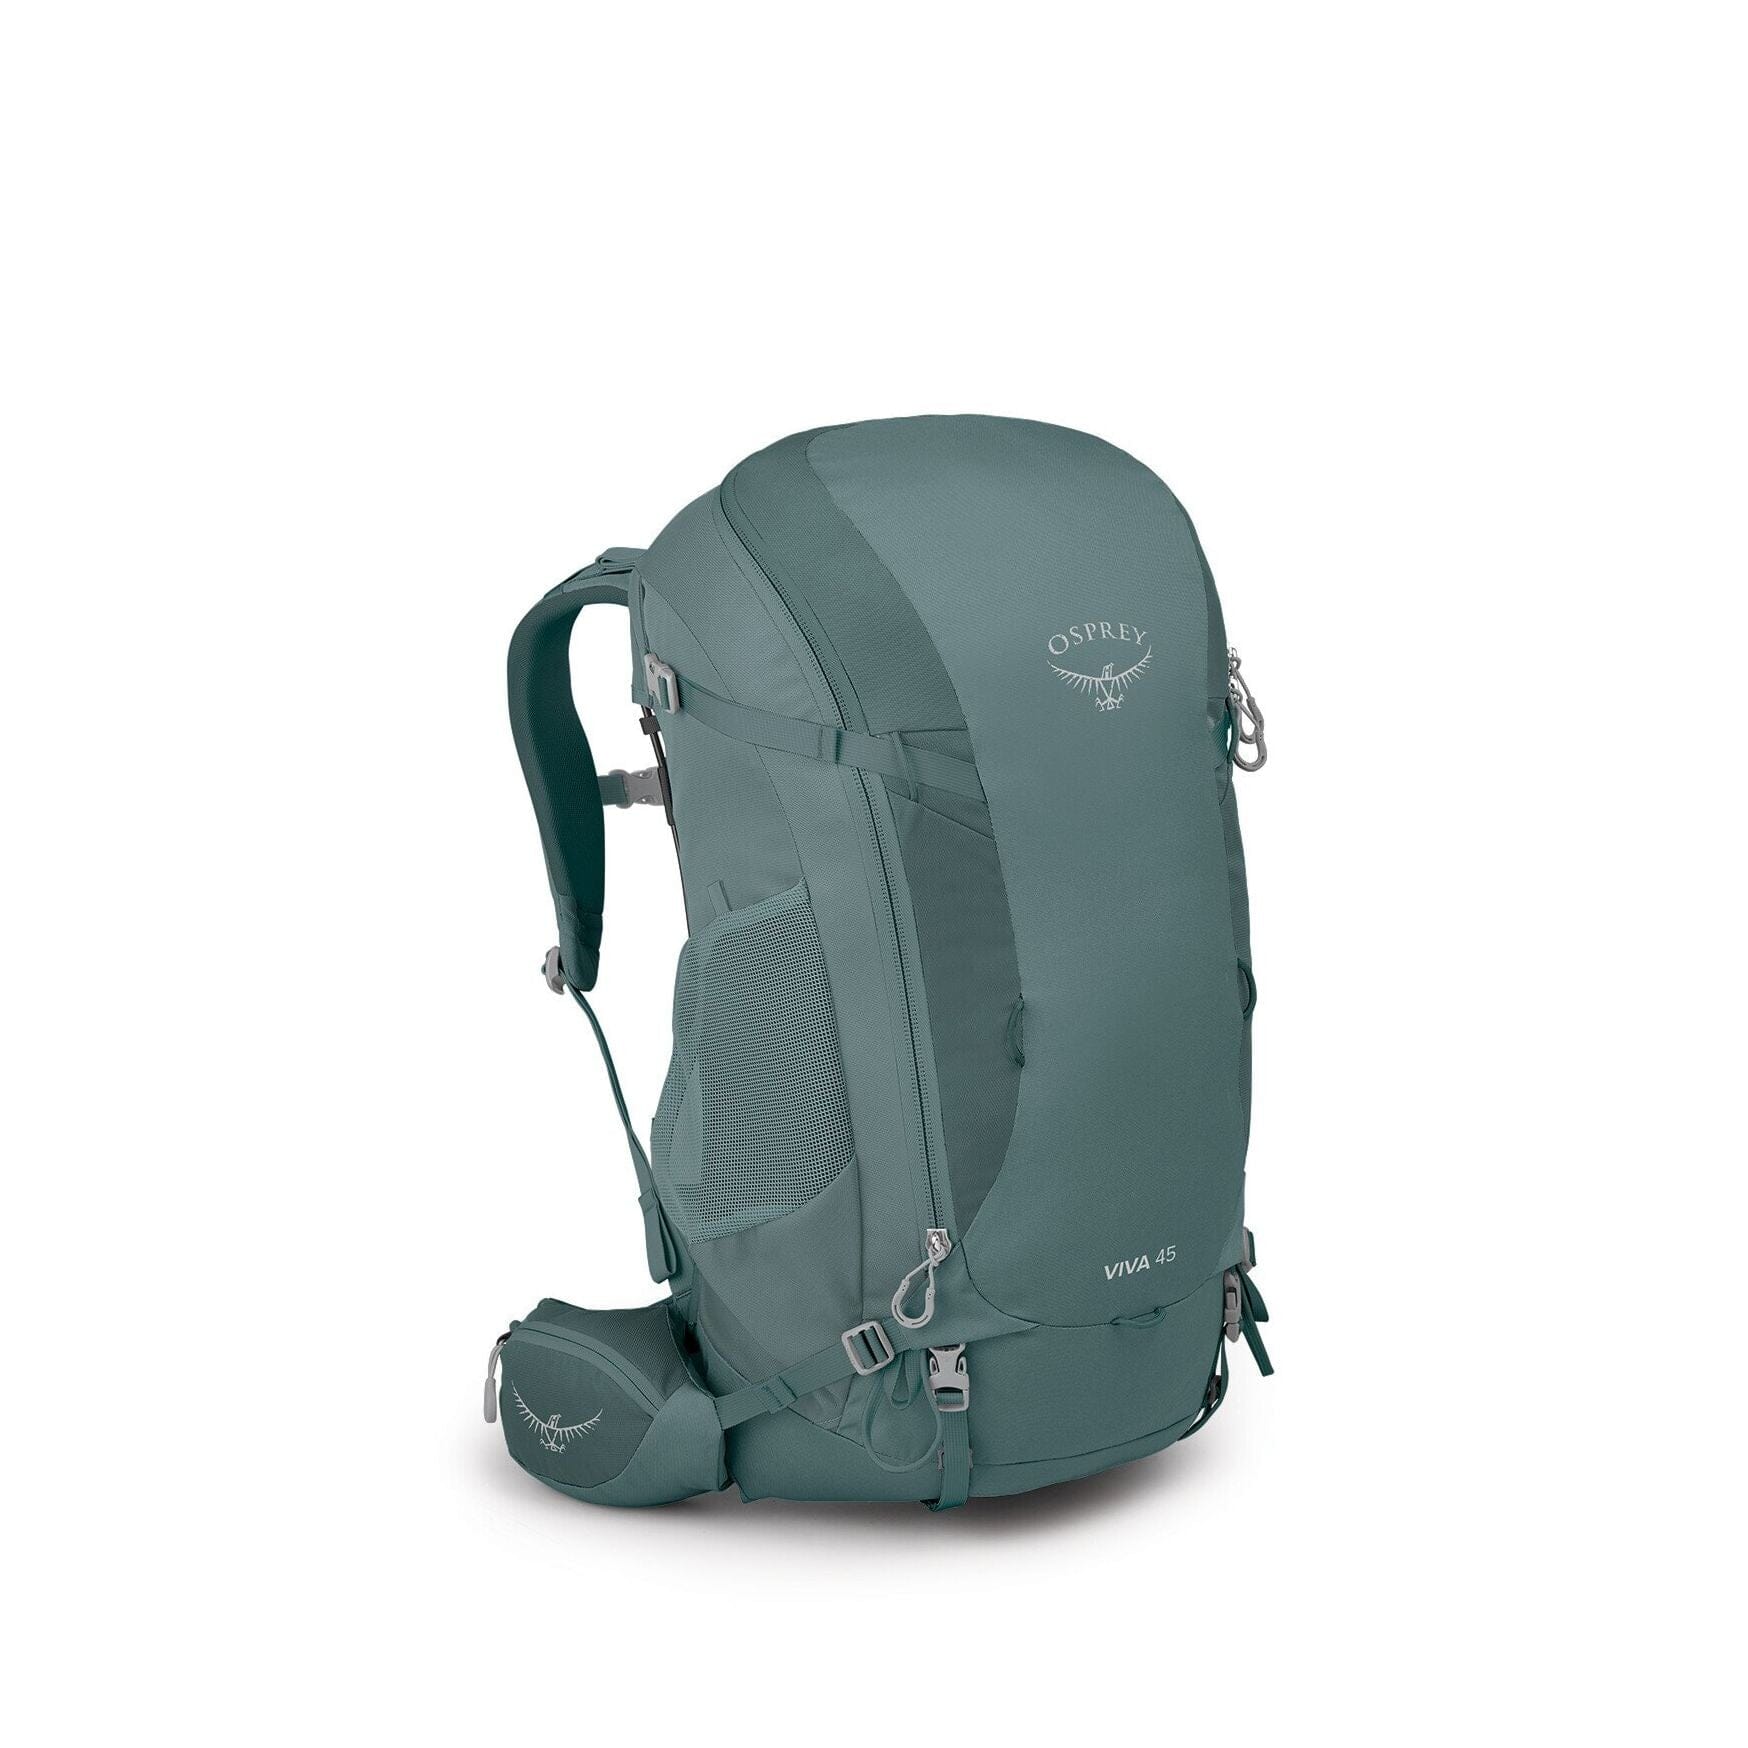 Osprey Viva 45 Women's Backpacking Backpack 